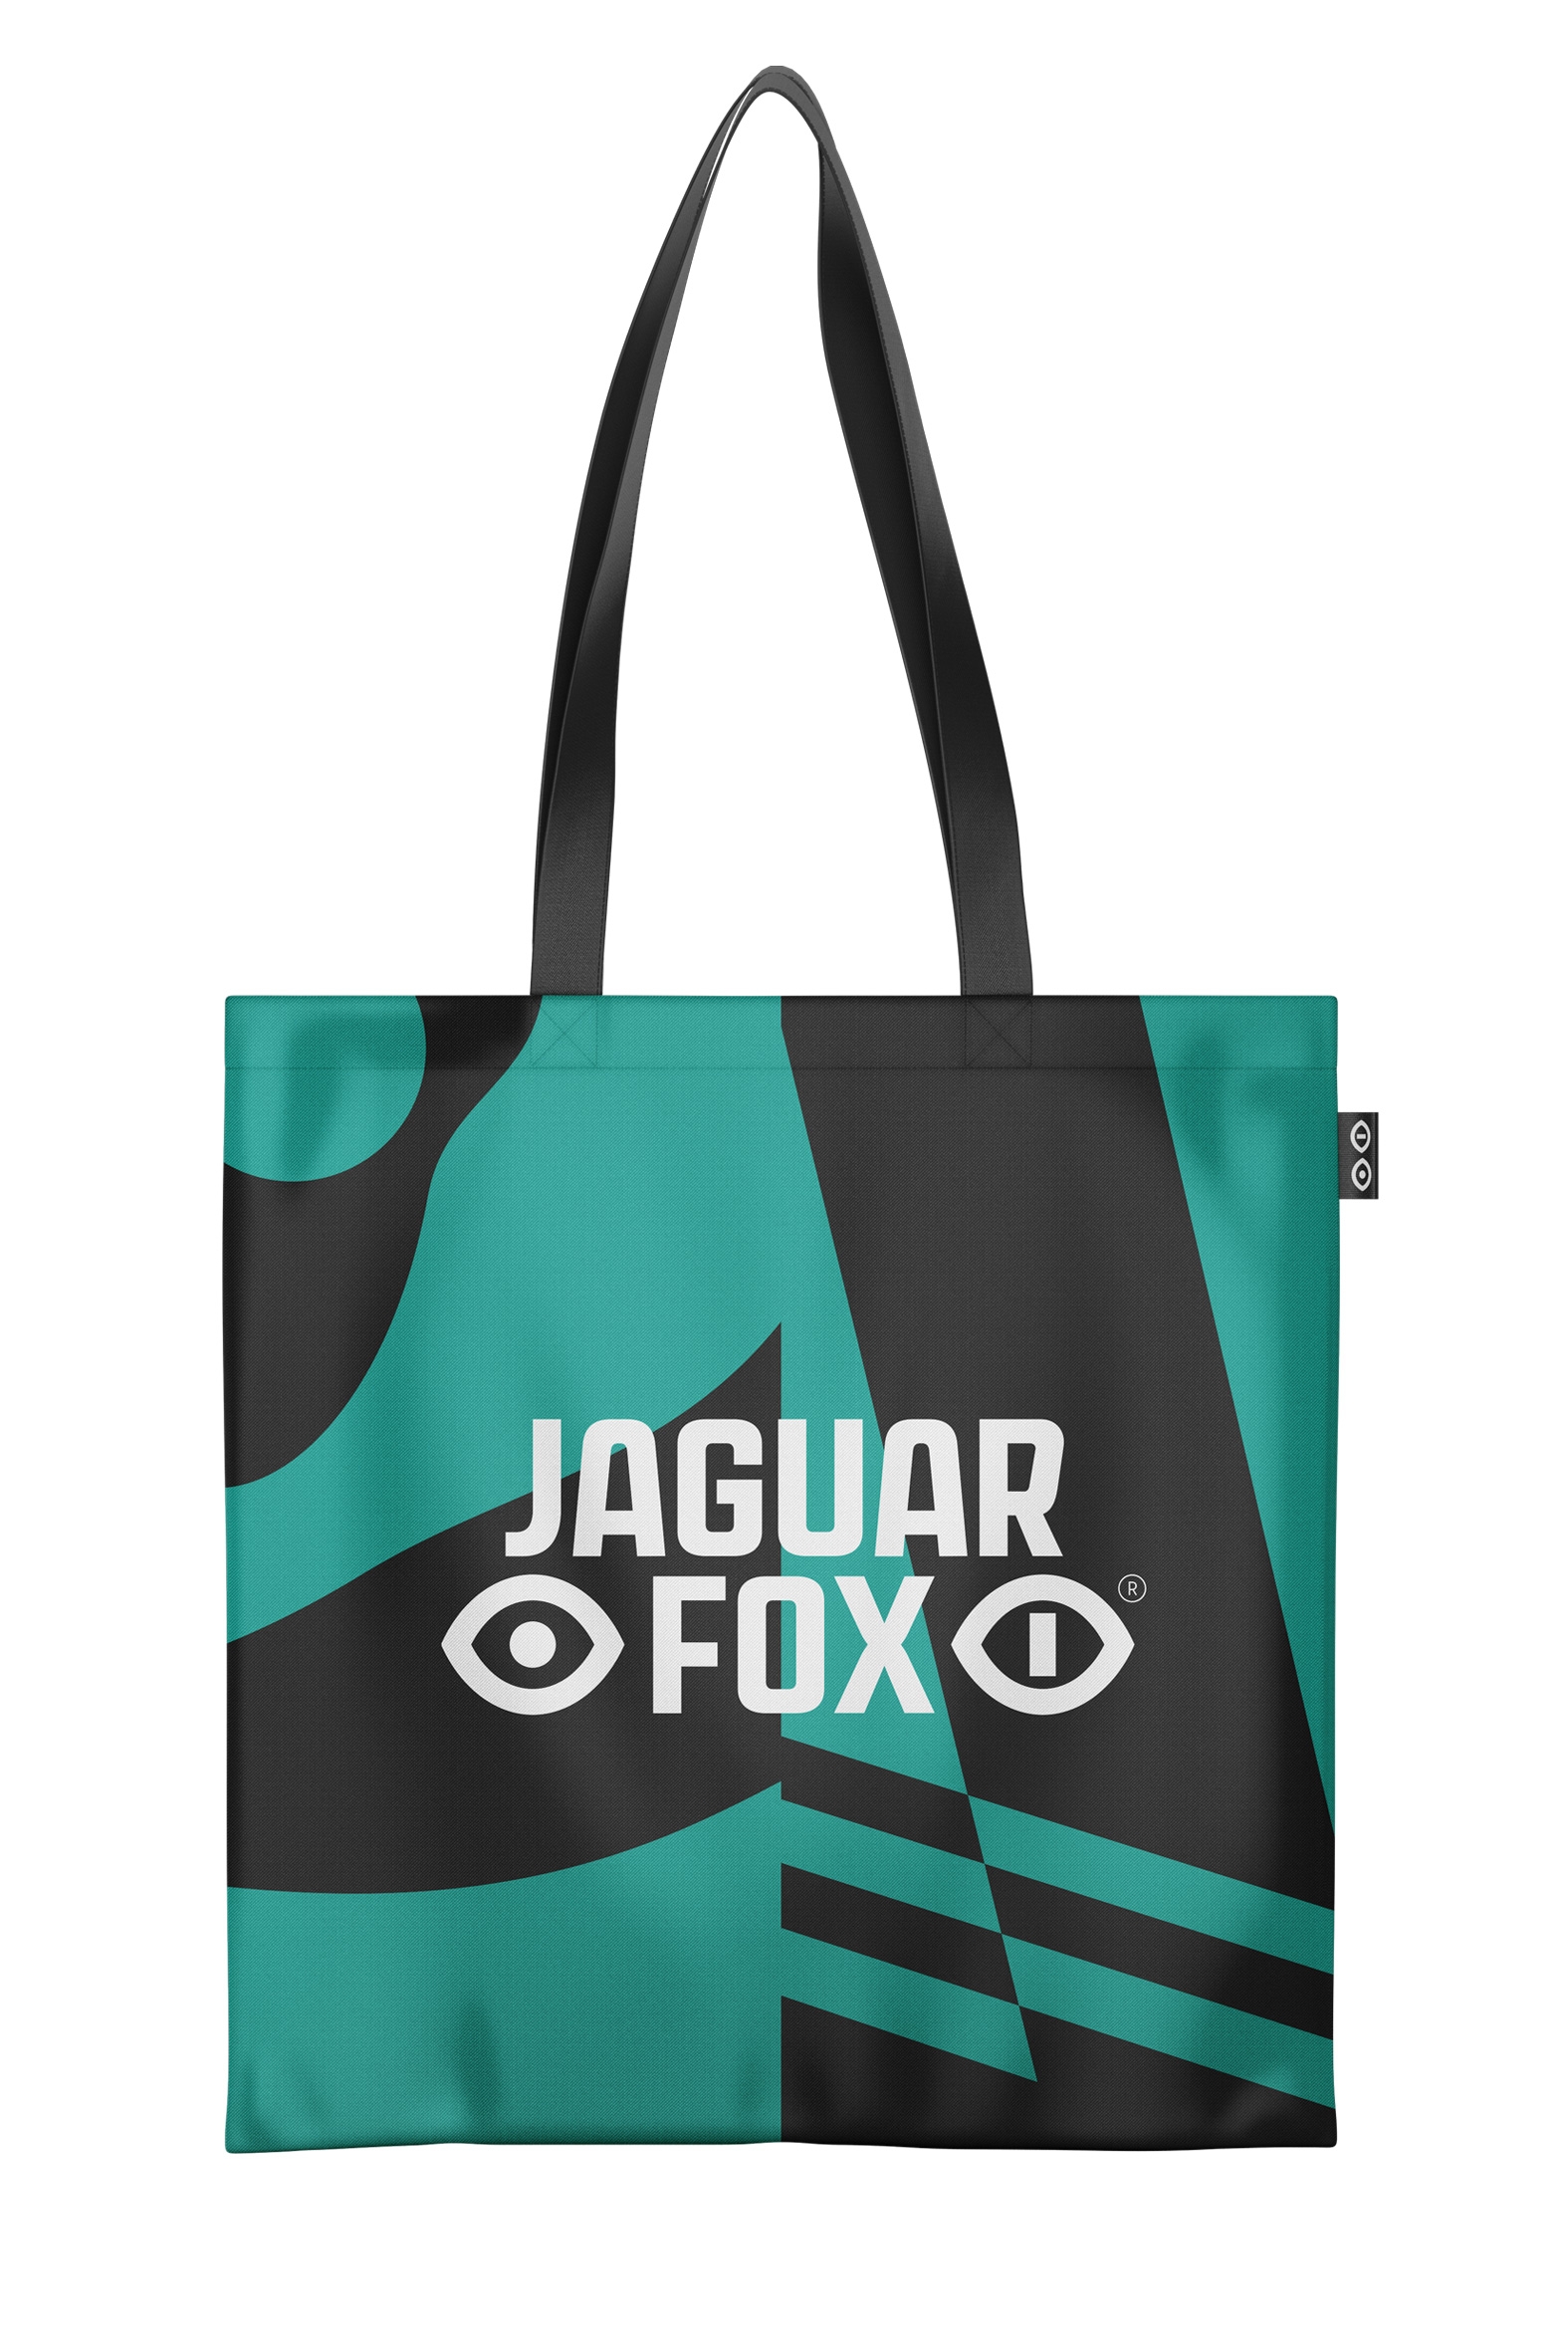 jaguar_fox_toe